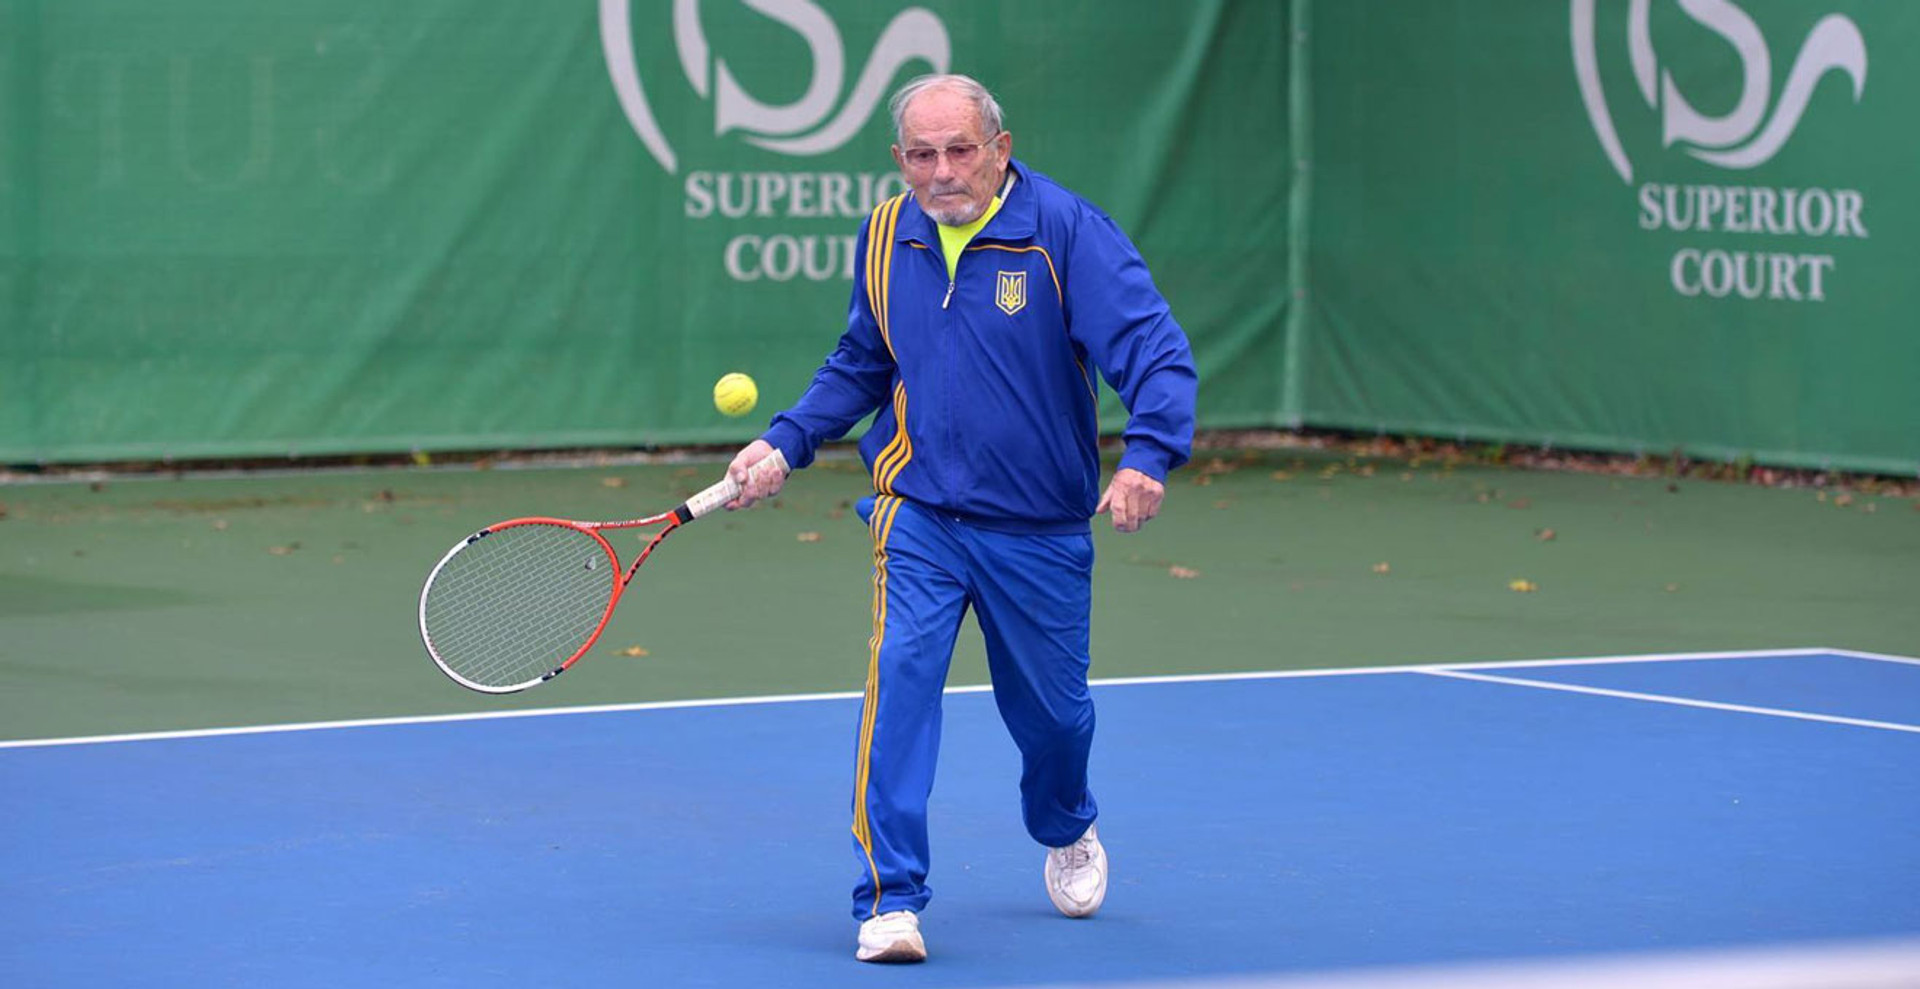 Уже хочу побеждать! Как выступает 93-летний теннисист Украины